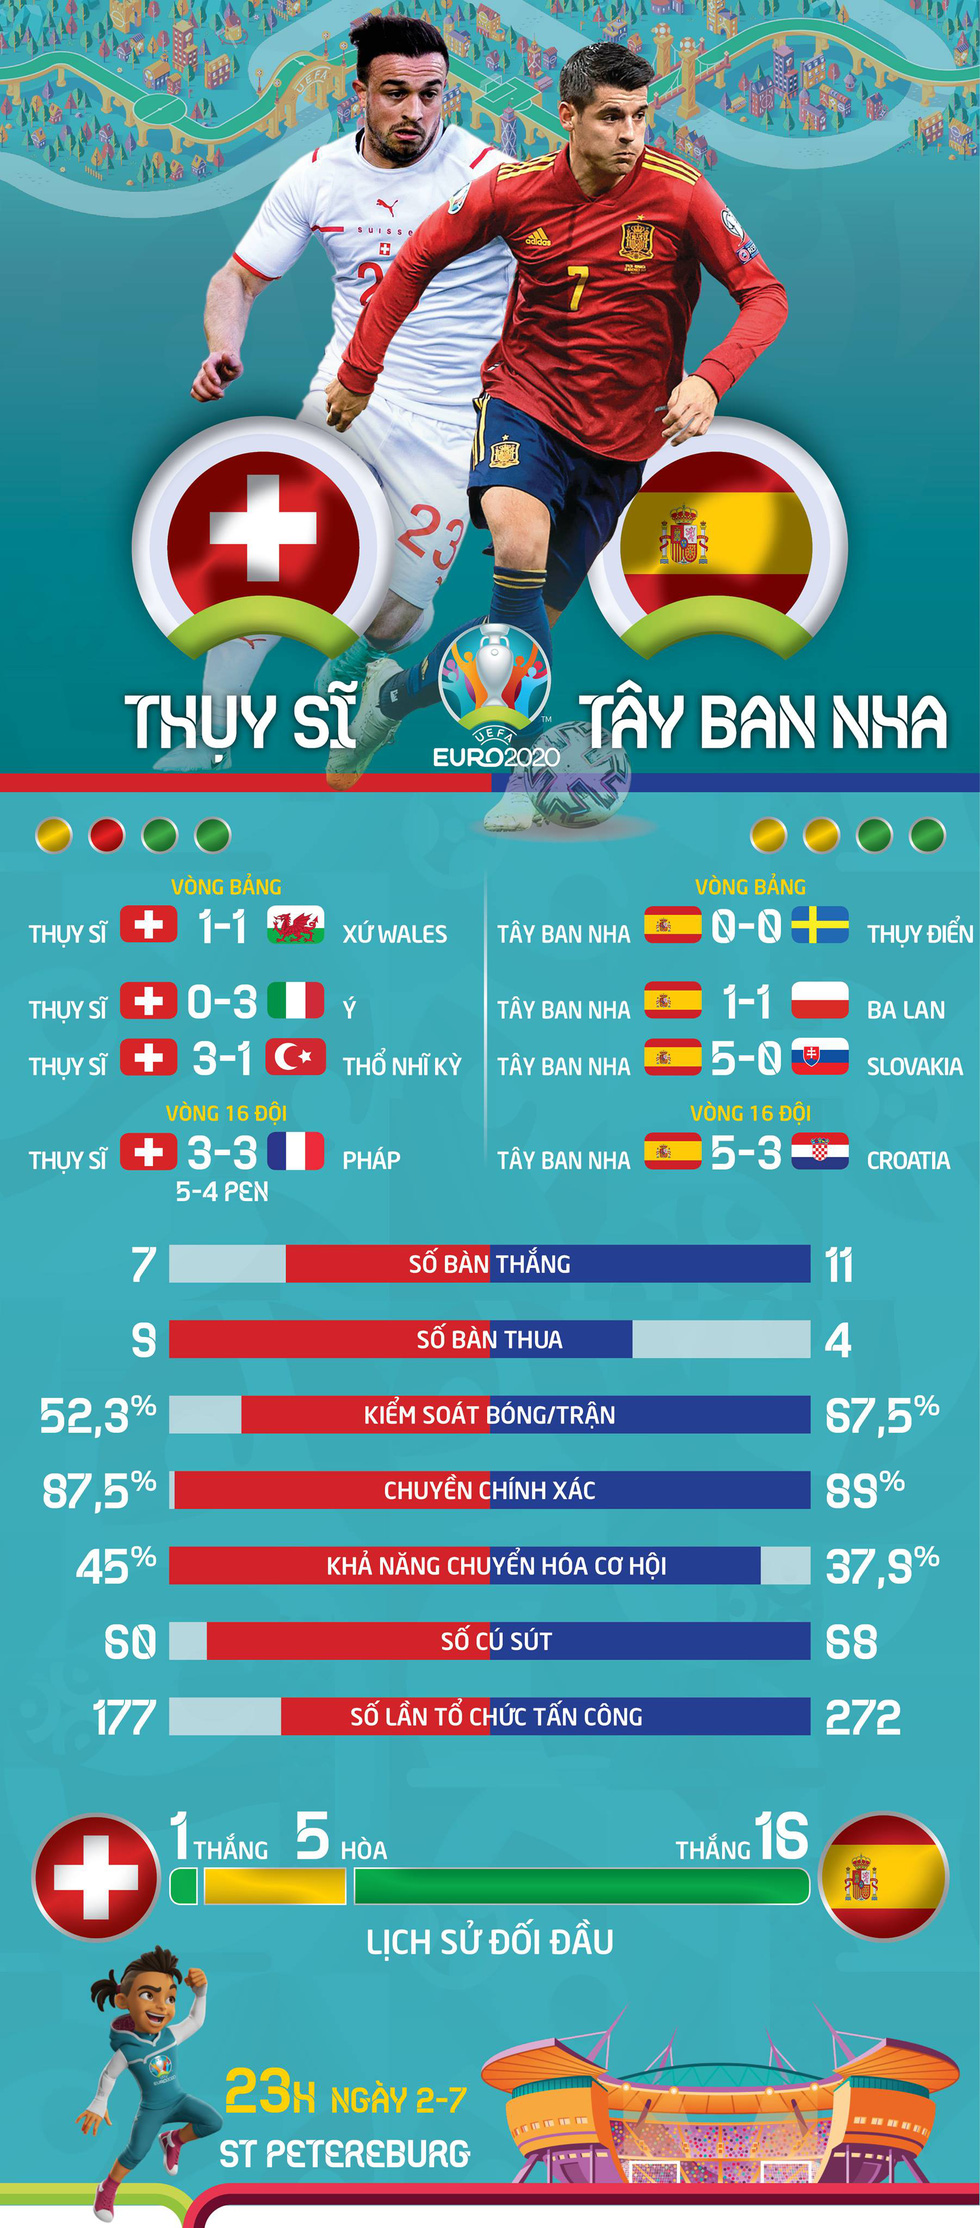 So sánh sức mạnh Thụy Sỹ và Tây Ban Nha ở tứ kết Euro 2020 - Ảnh 1.